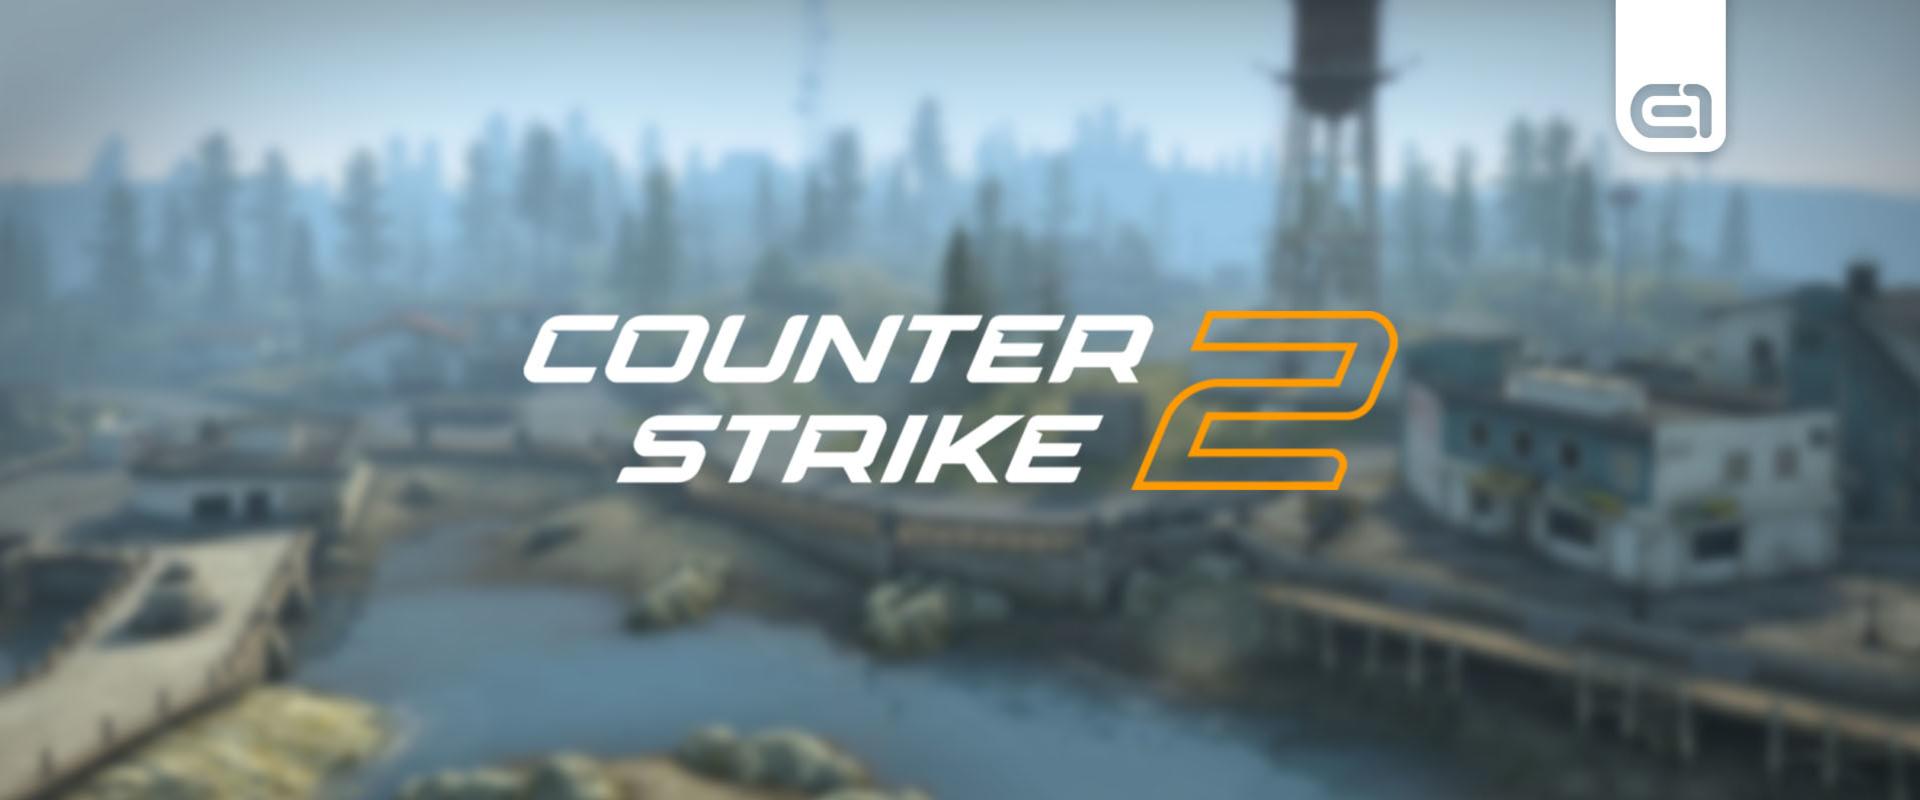 Ezen a napon jöhet ki a Counter-Strike 2?